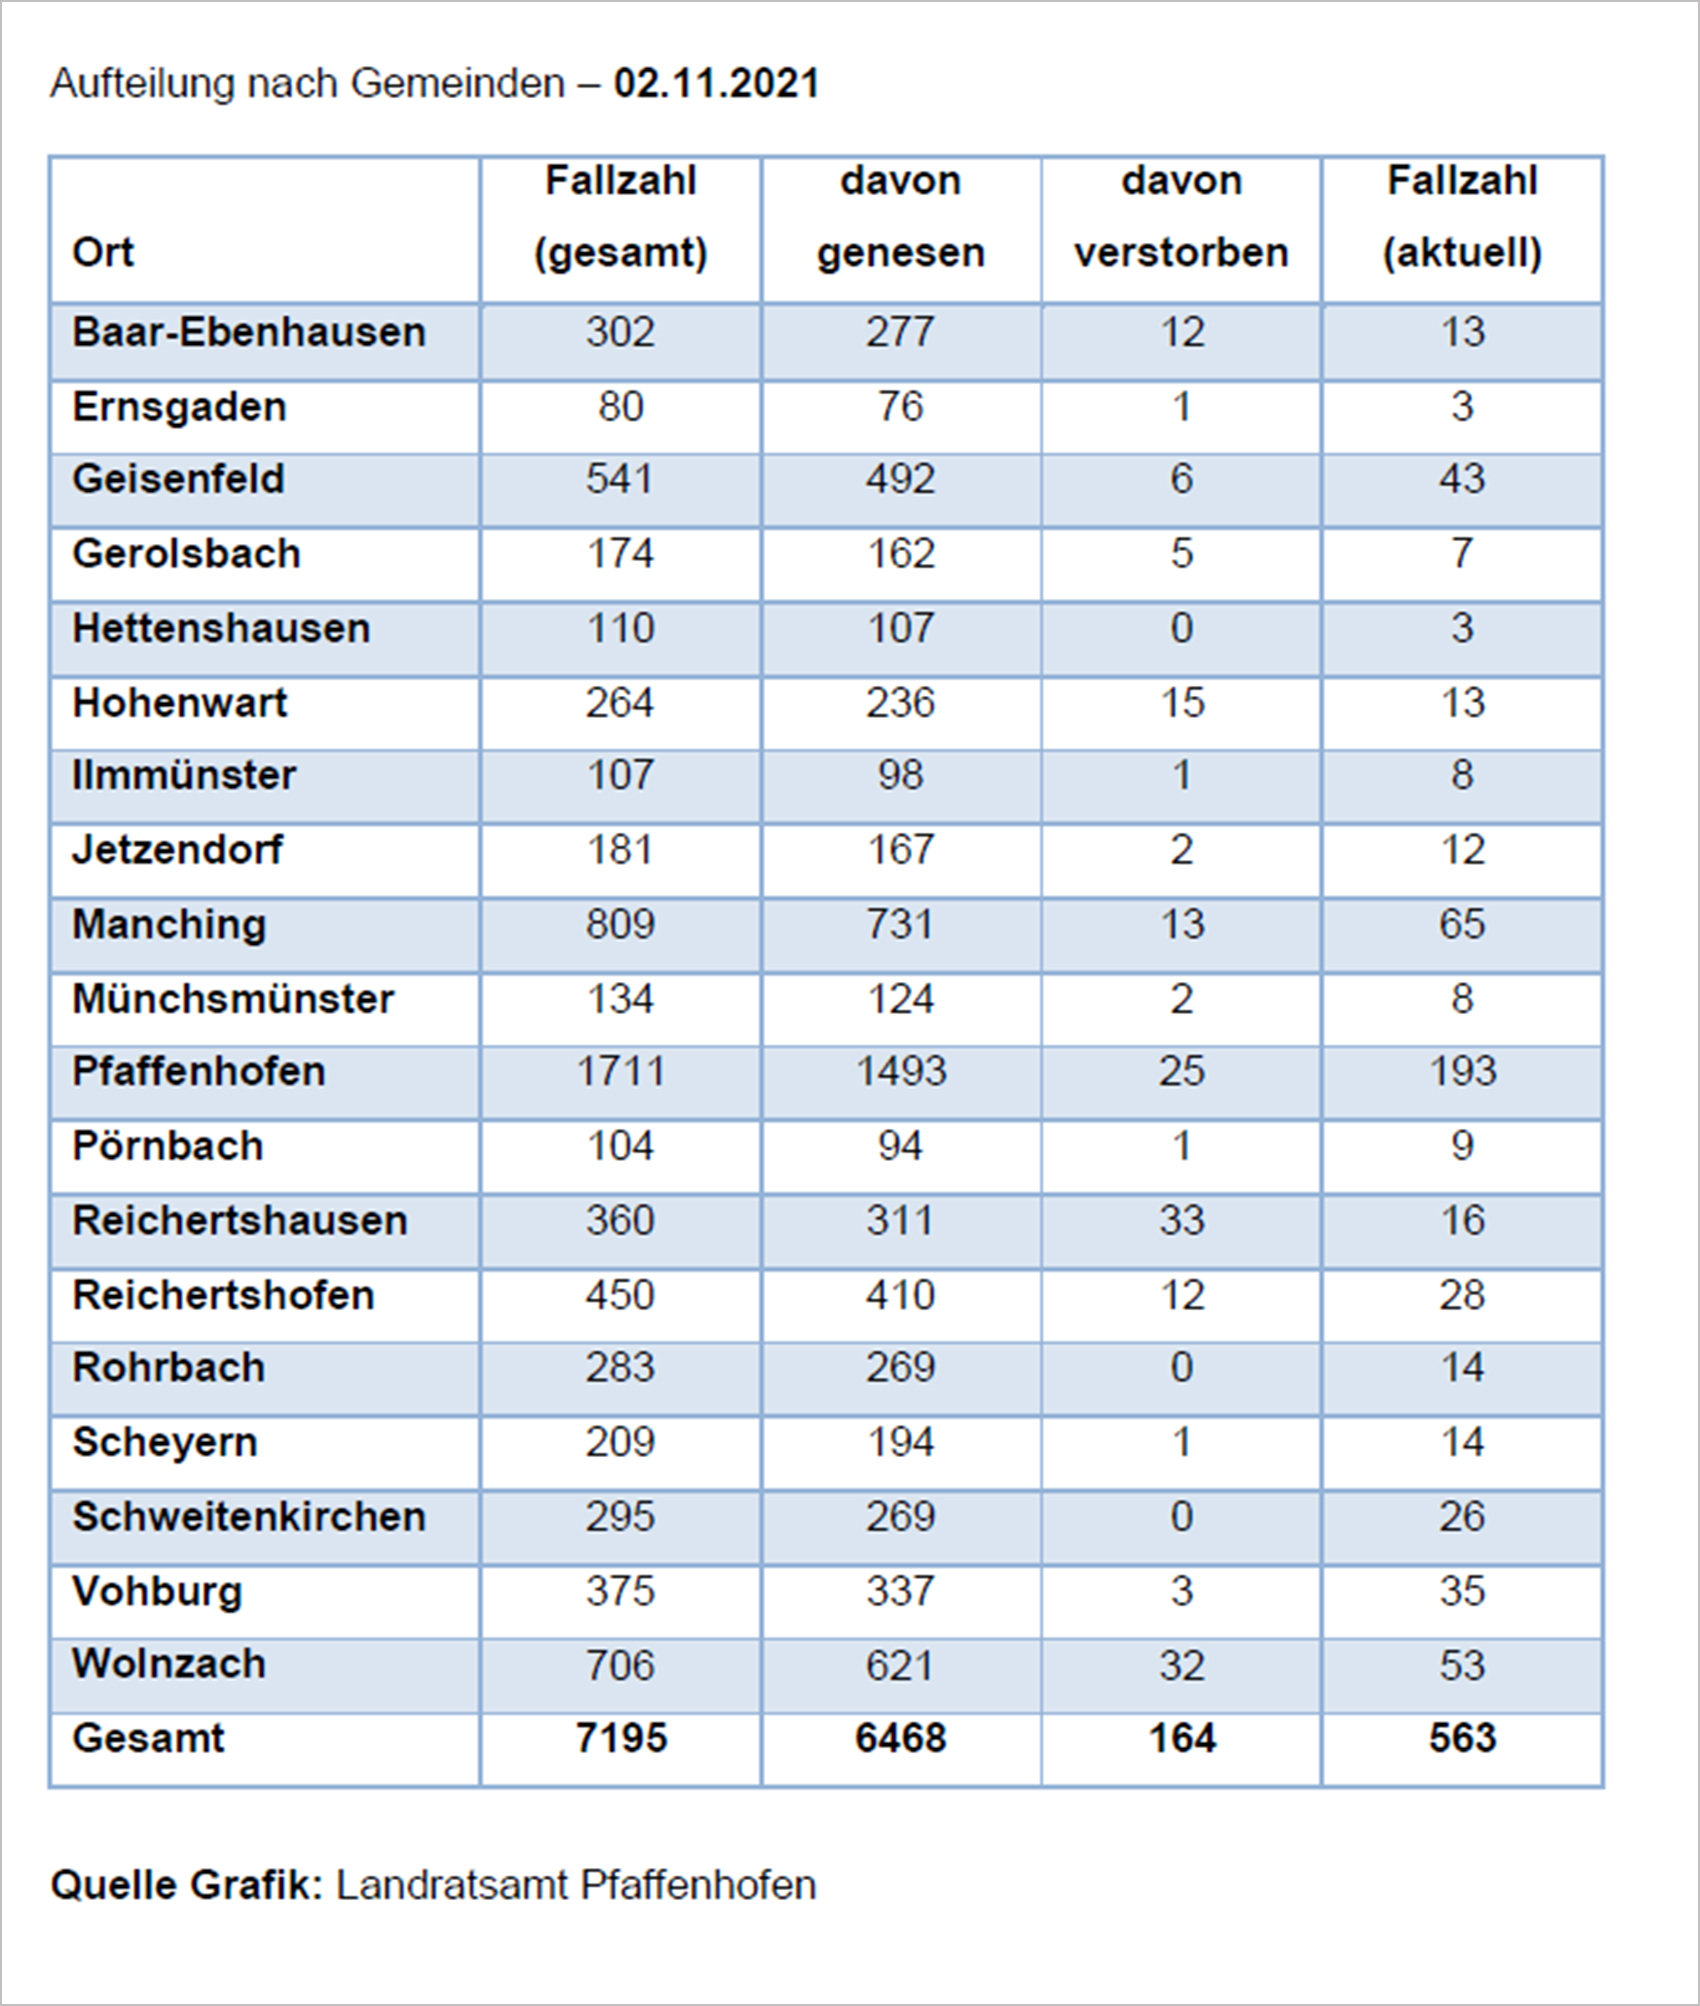 Verteilung der Fallzahlen auf die Landkreisgemeinden - 02.11.2021